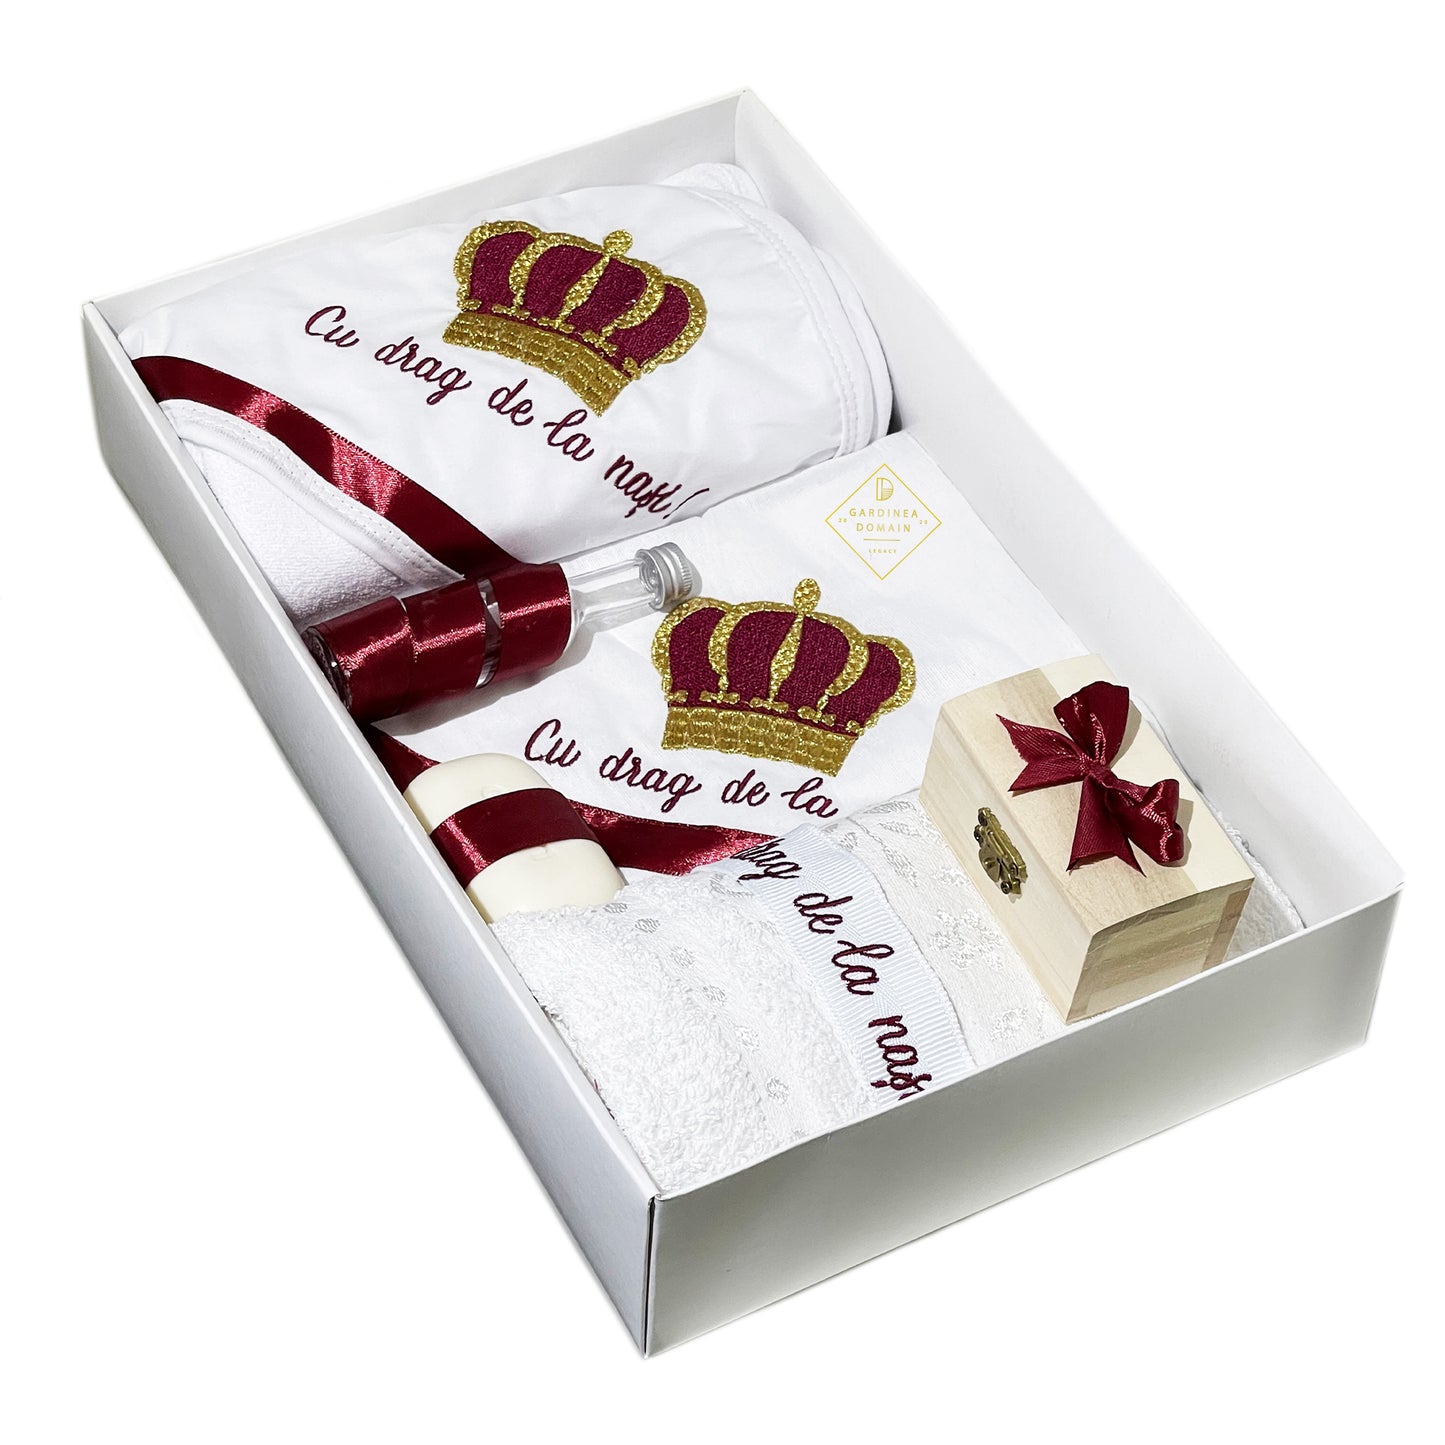 Trusou regal botez Gardinea Domain® 8 piese, in cutie cadou, bumbac 100%, personalizat brodat cu mesajul "Cu drag de la nasi!" rosu